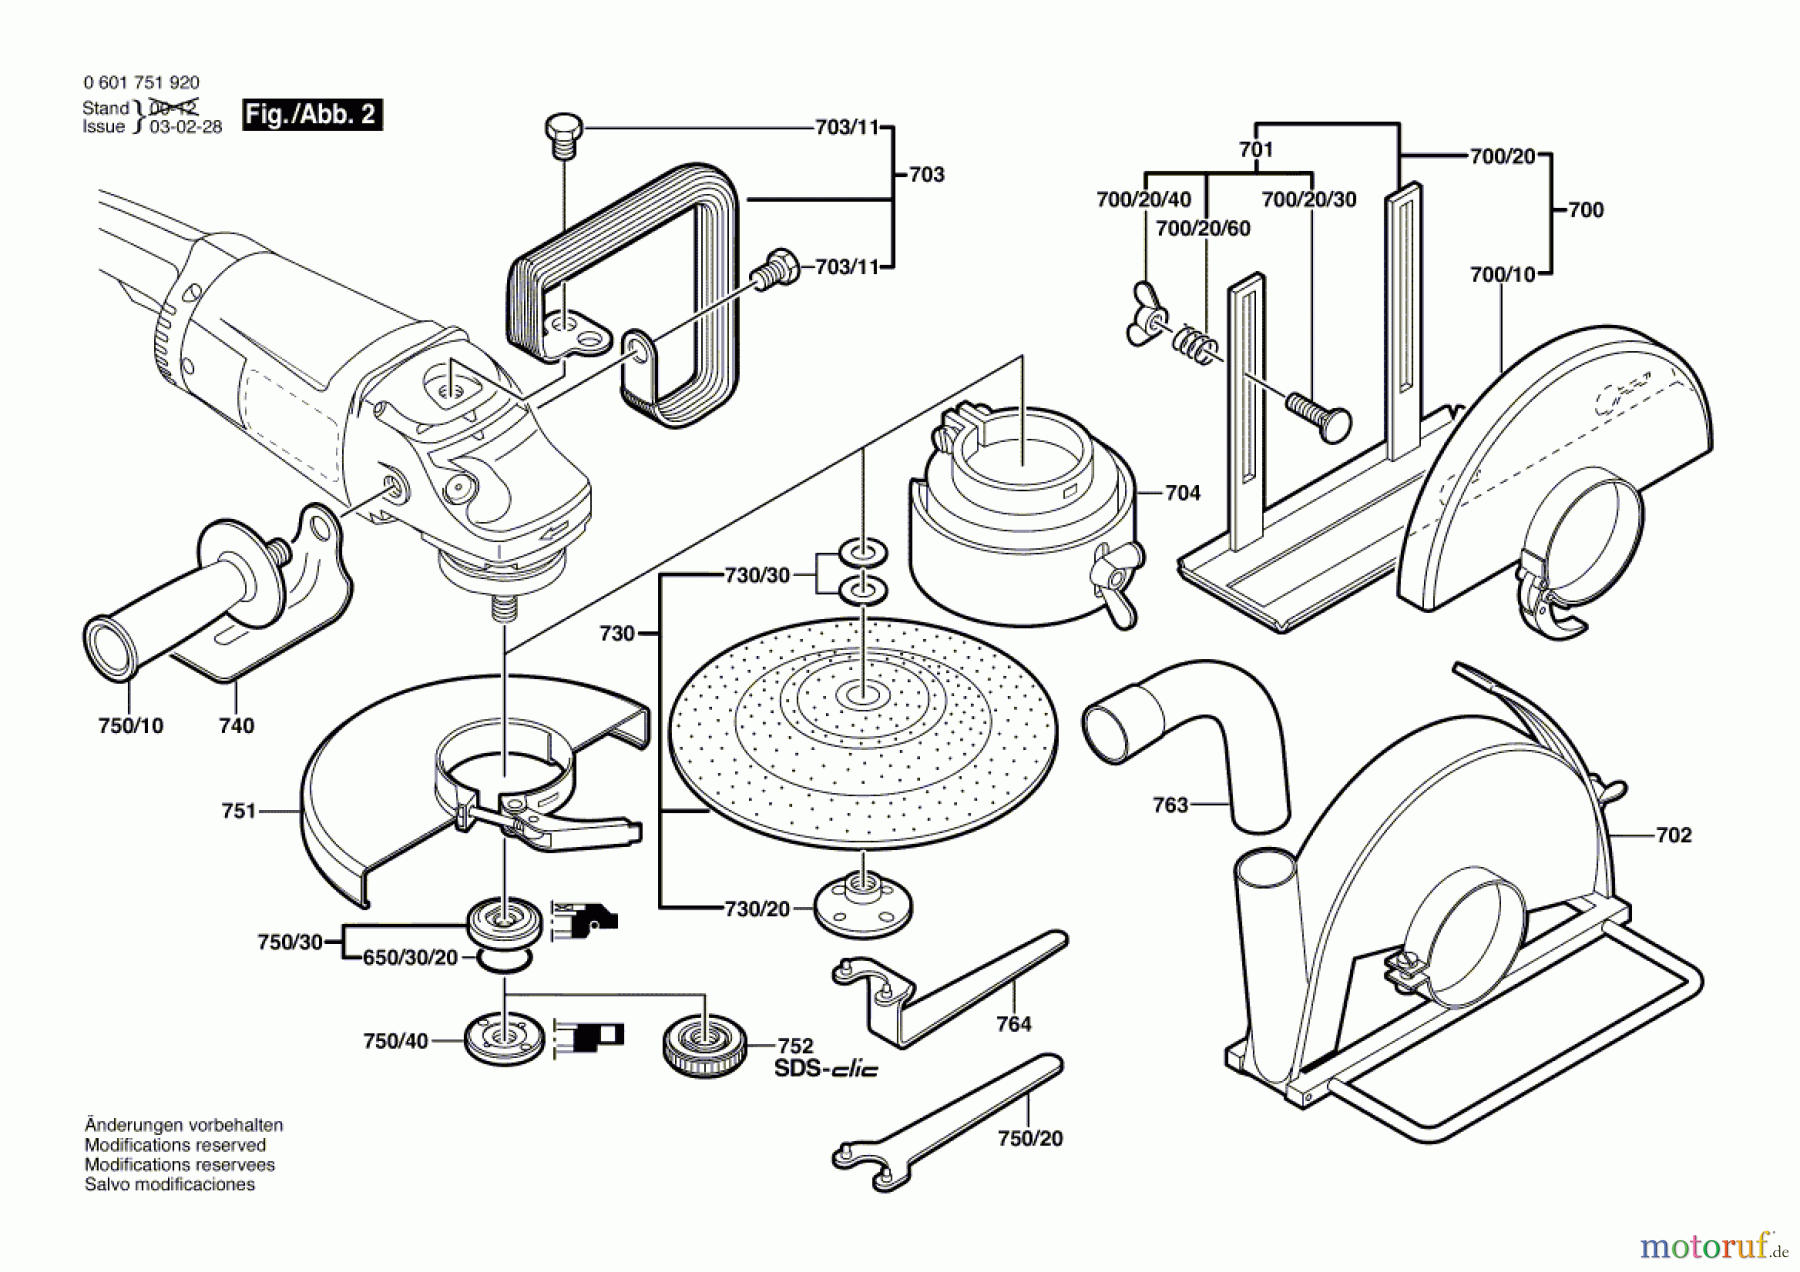  Bosch Werkzeug Winkelschleifer GWS 180 J Seite 2